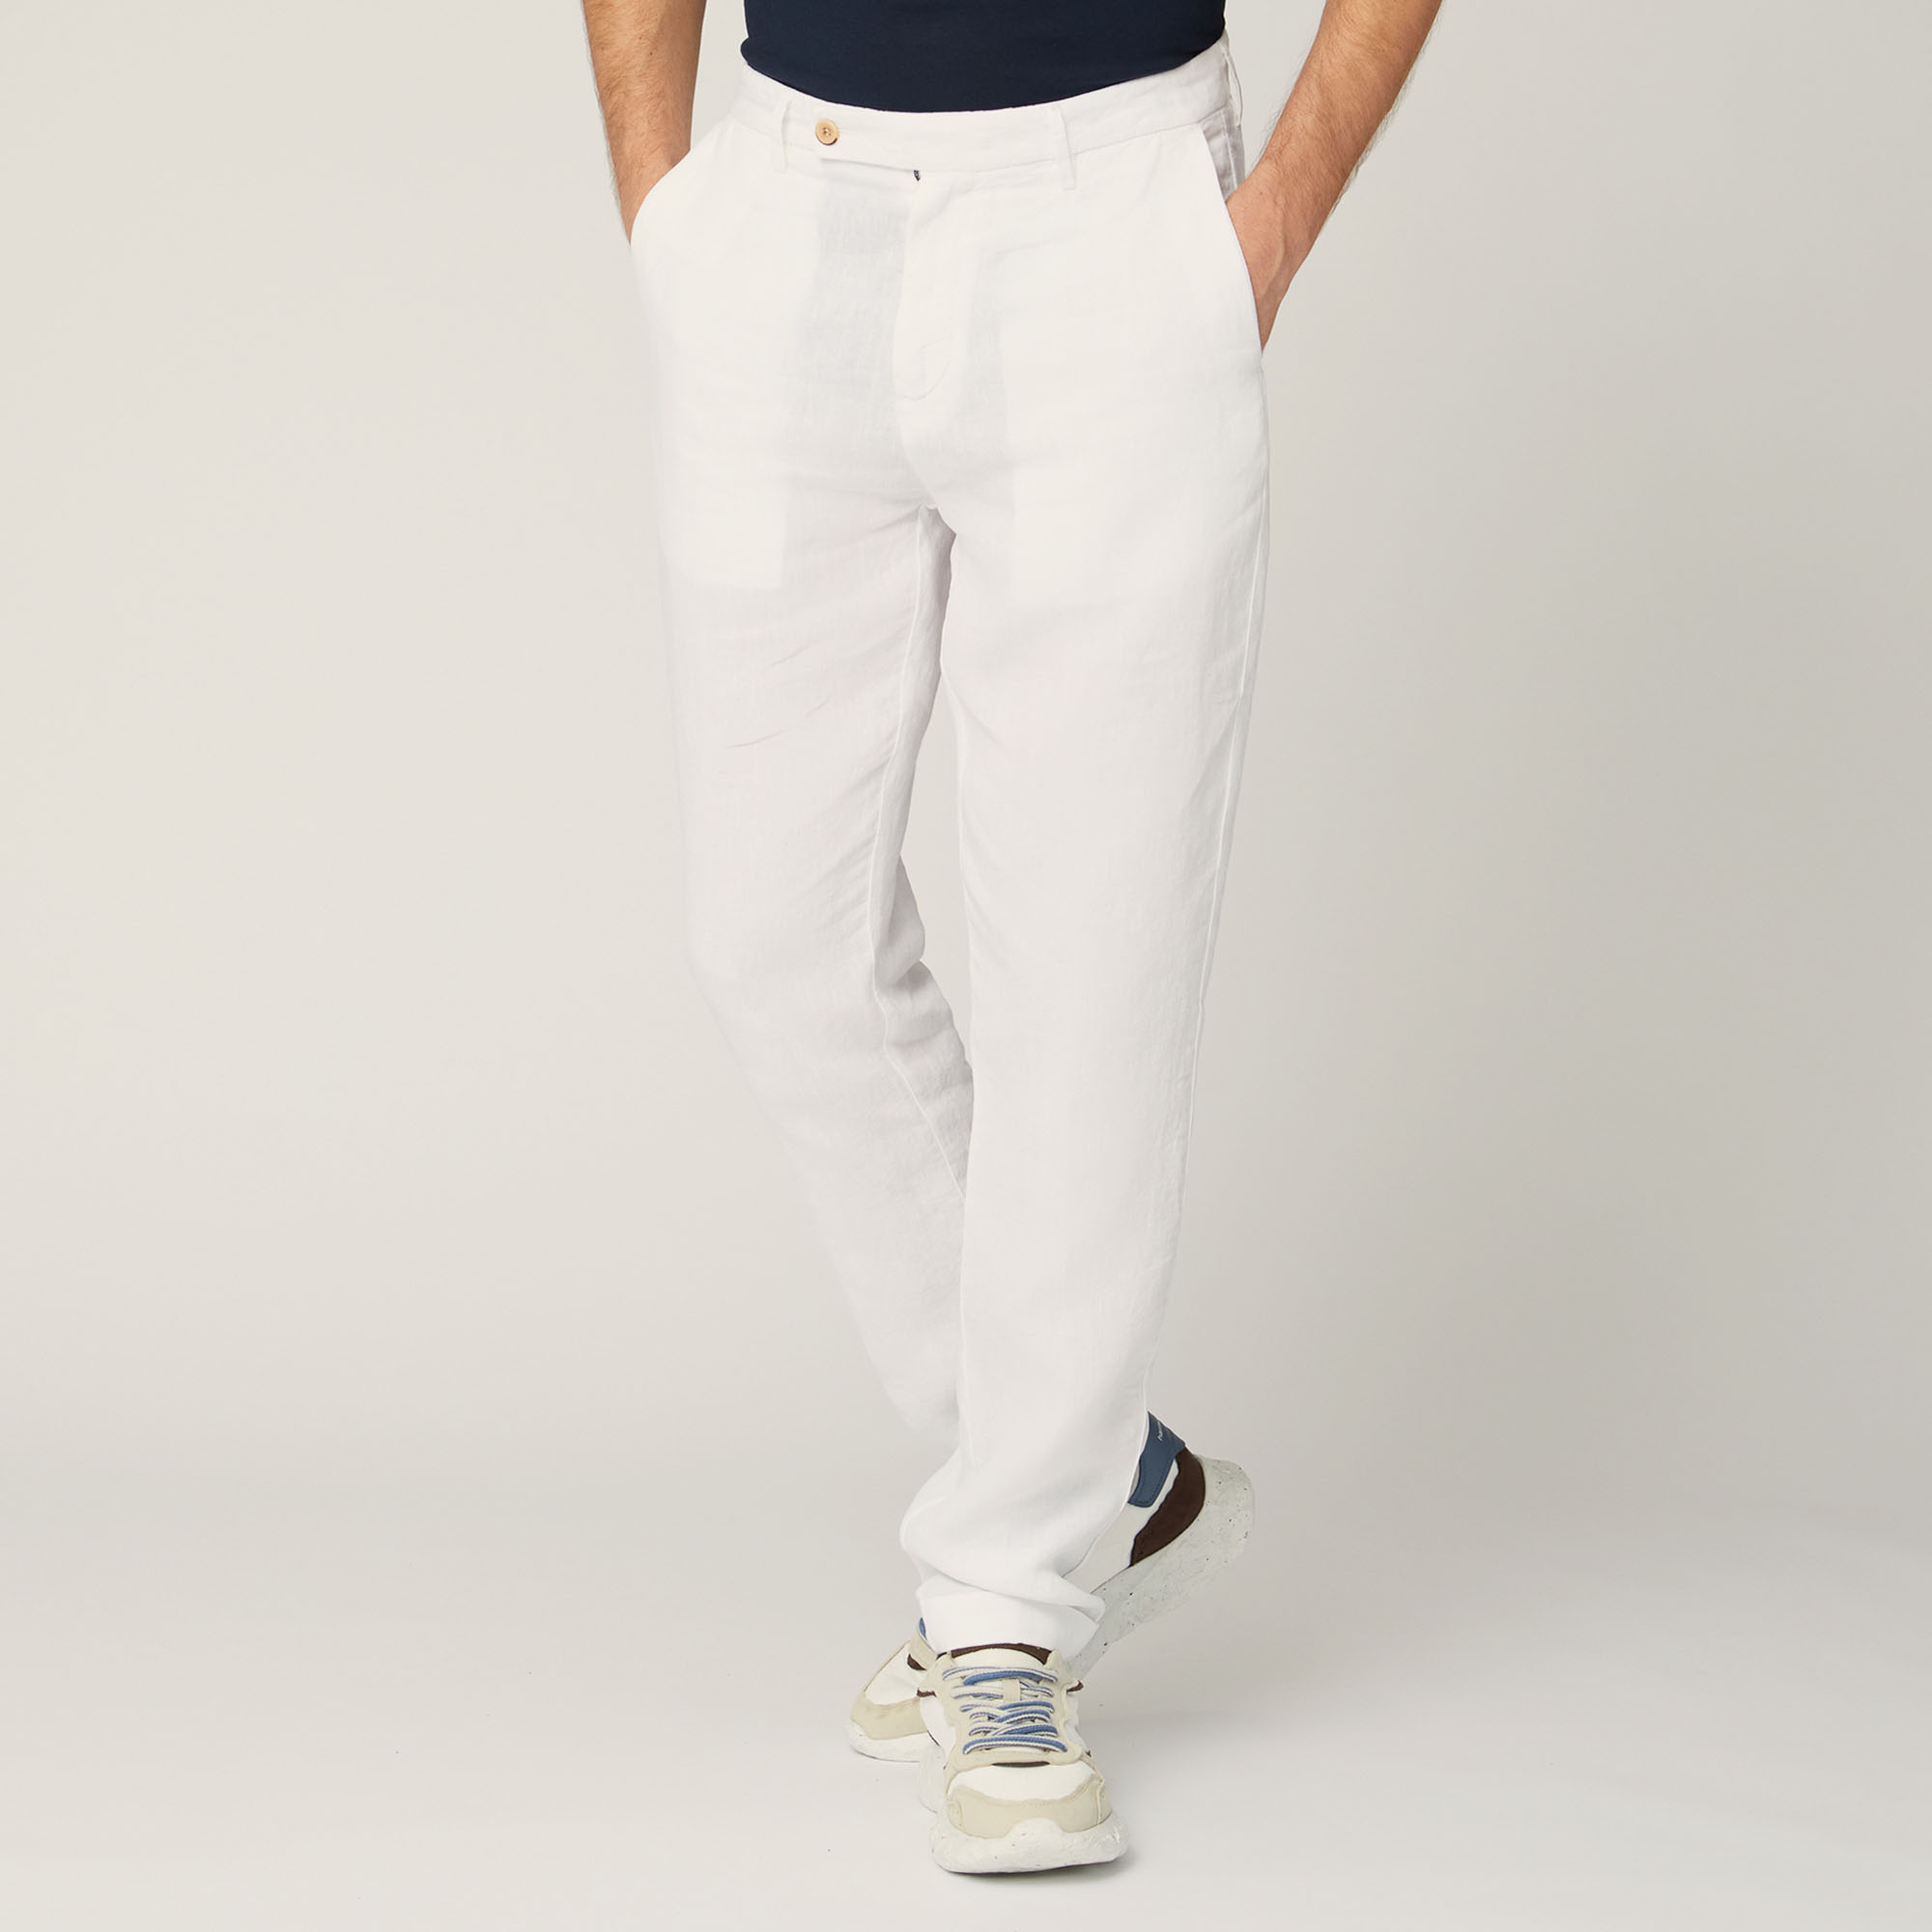 Pantaloni In Lino, Bianco, large image number 0